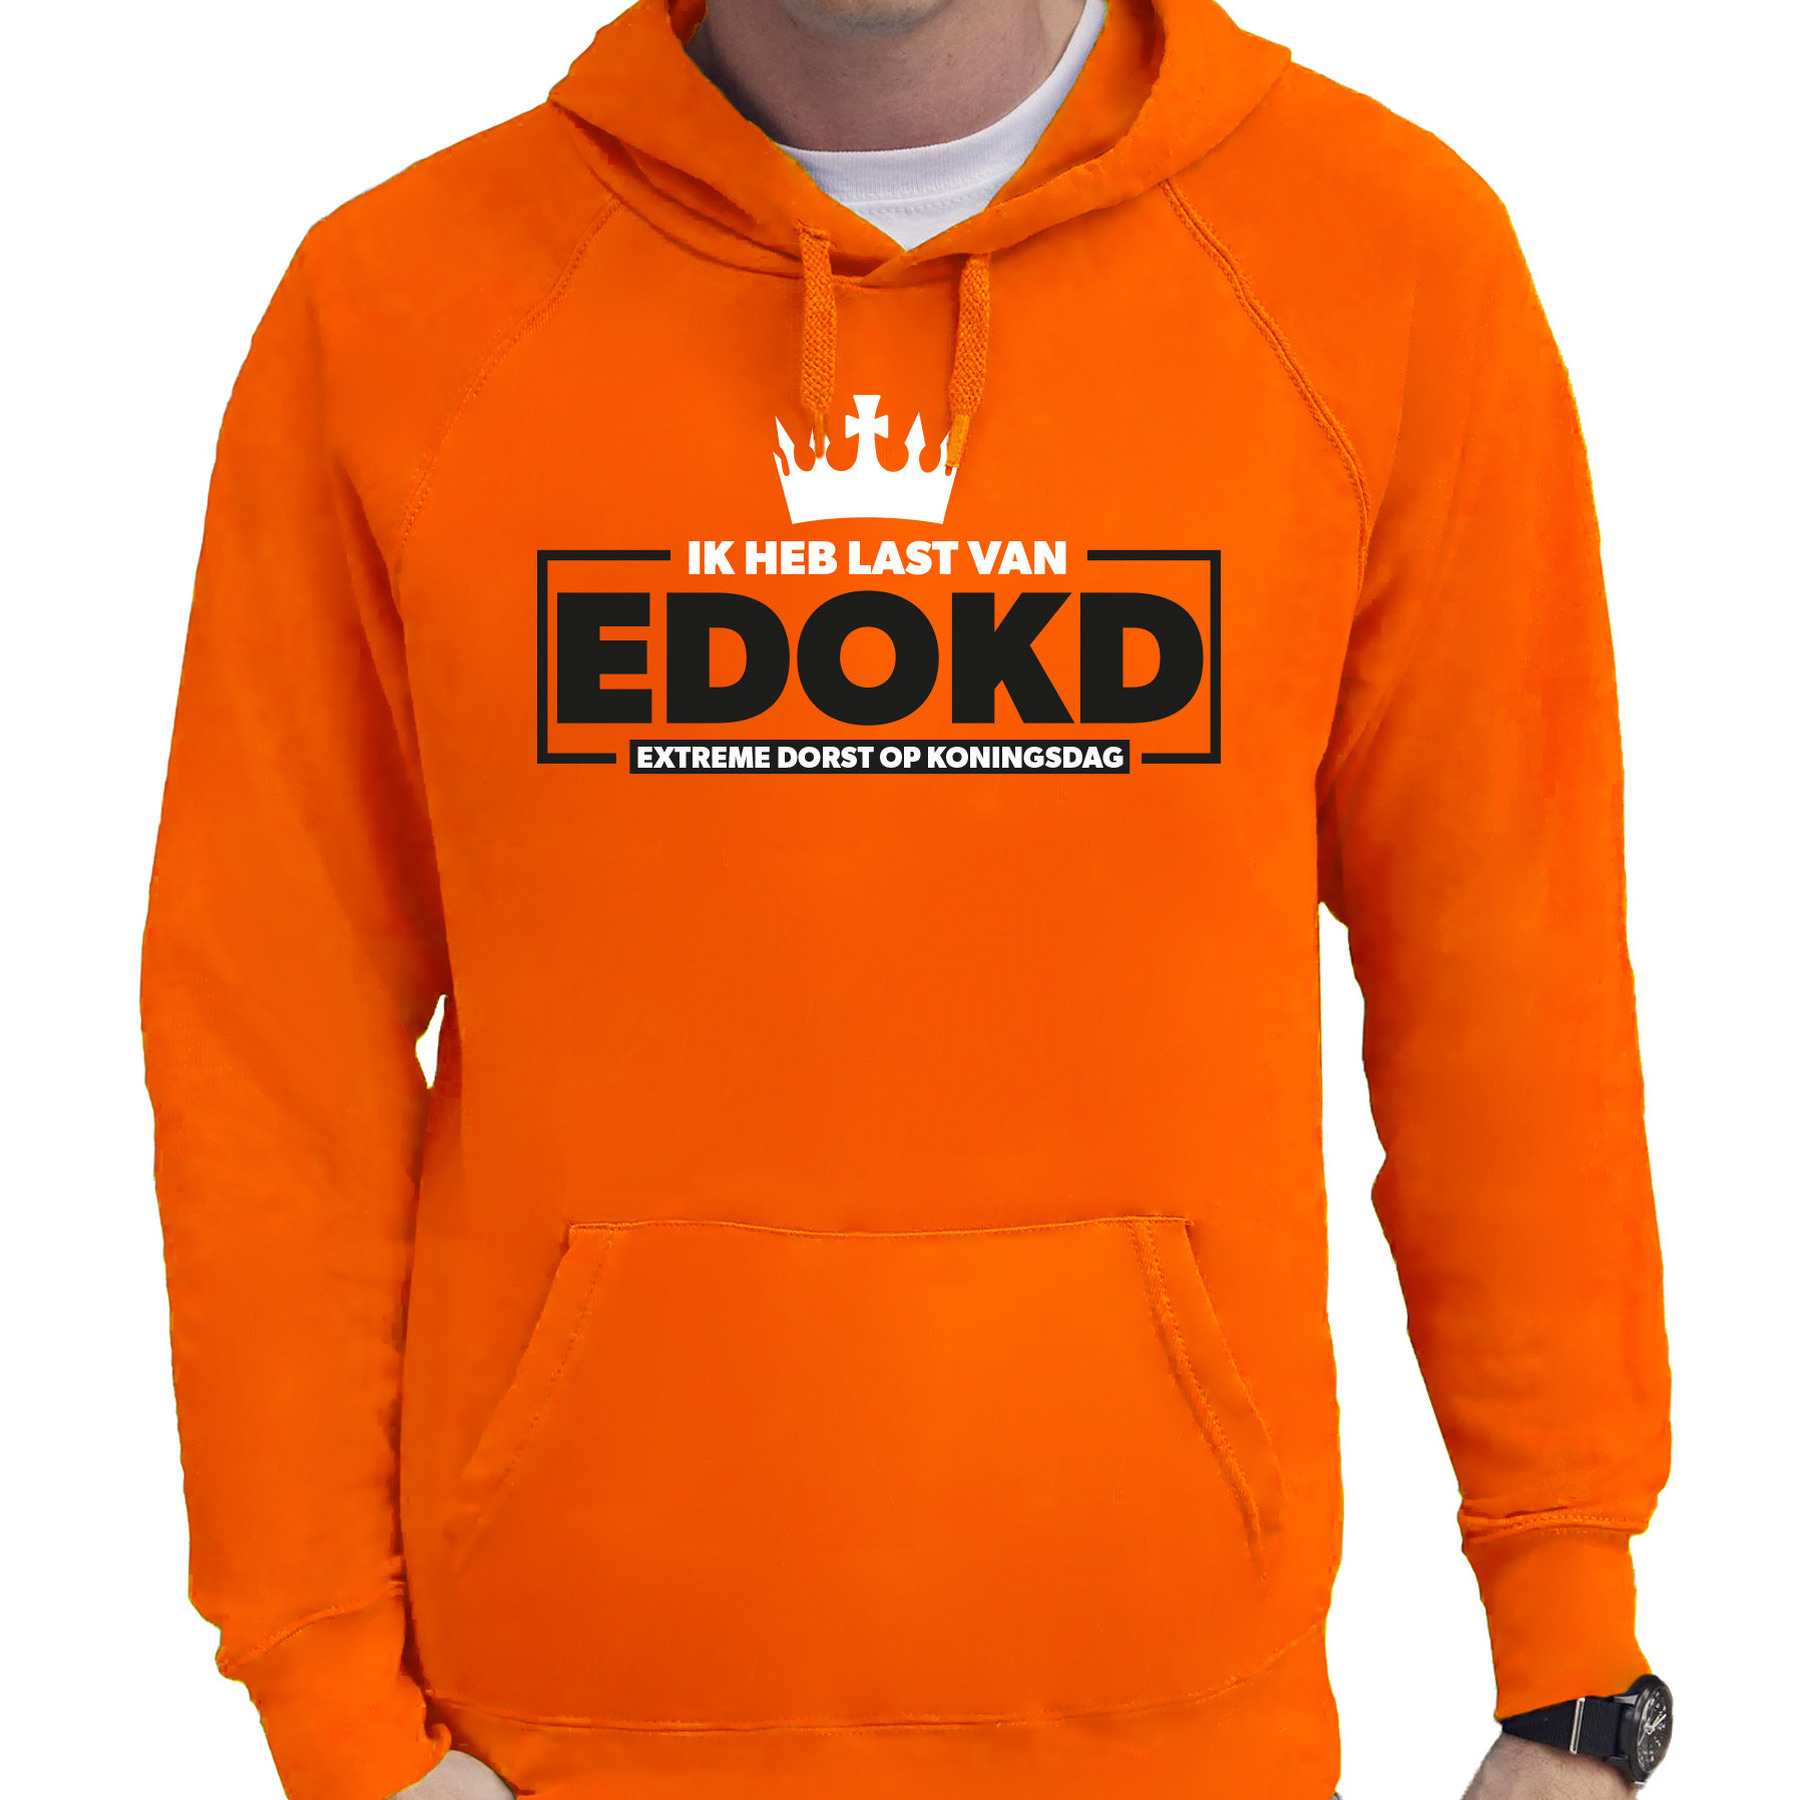 Koningsdag hoodie voor heren extreme dorst op koningsdag oranje oranje feestkleding